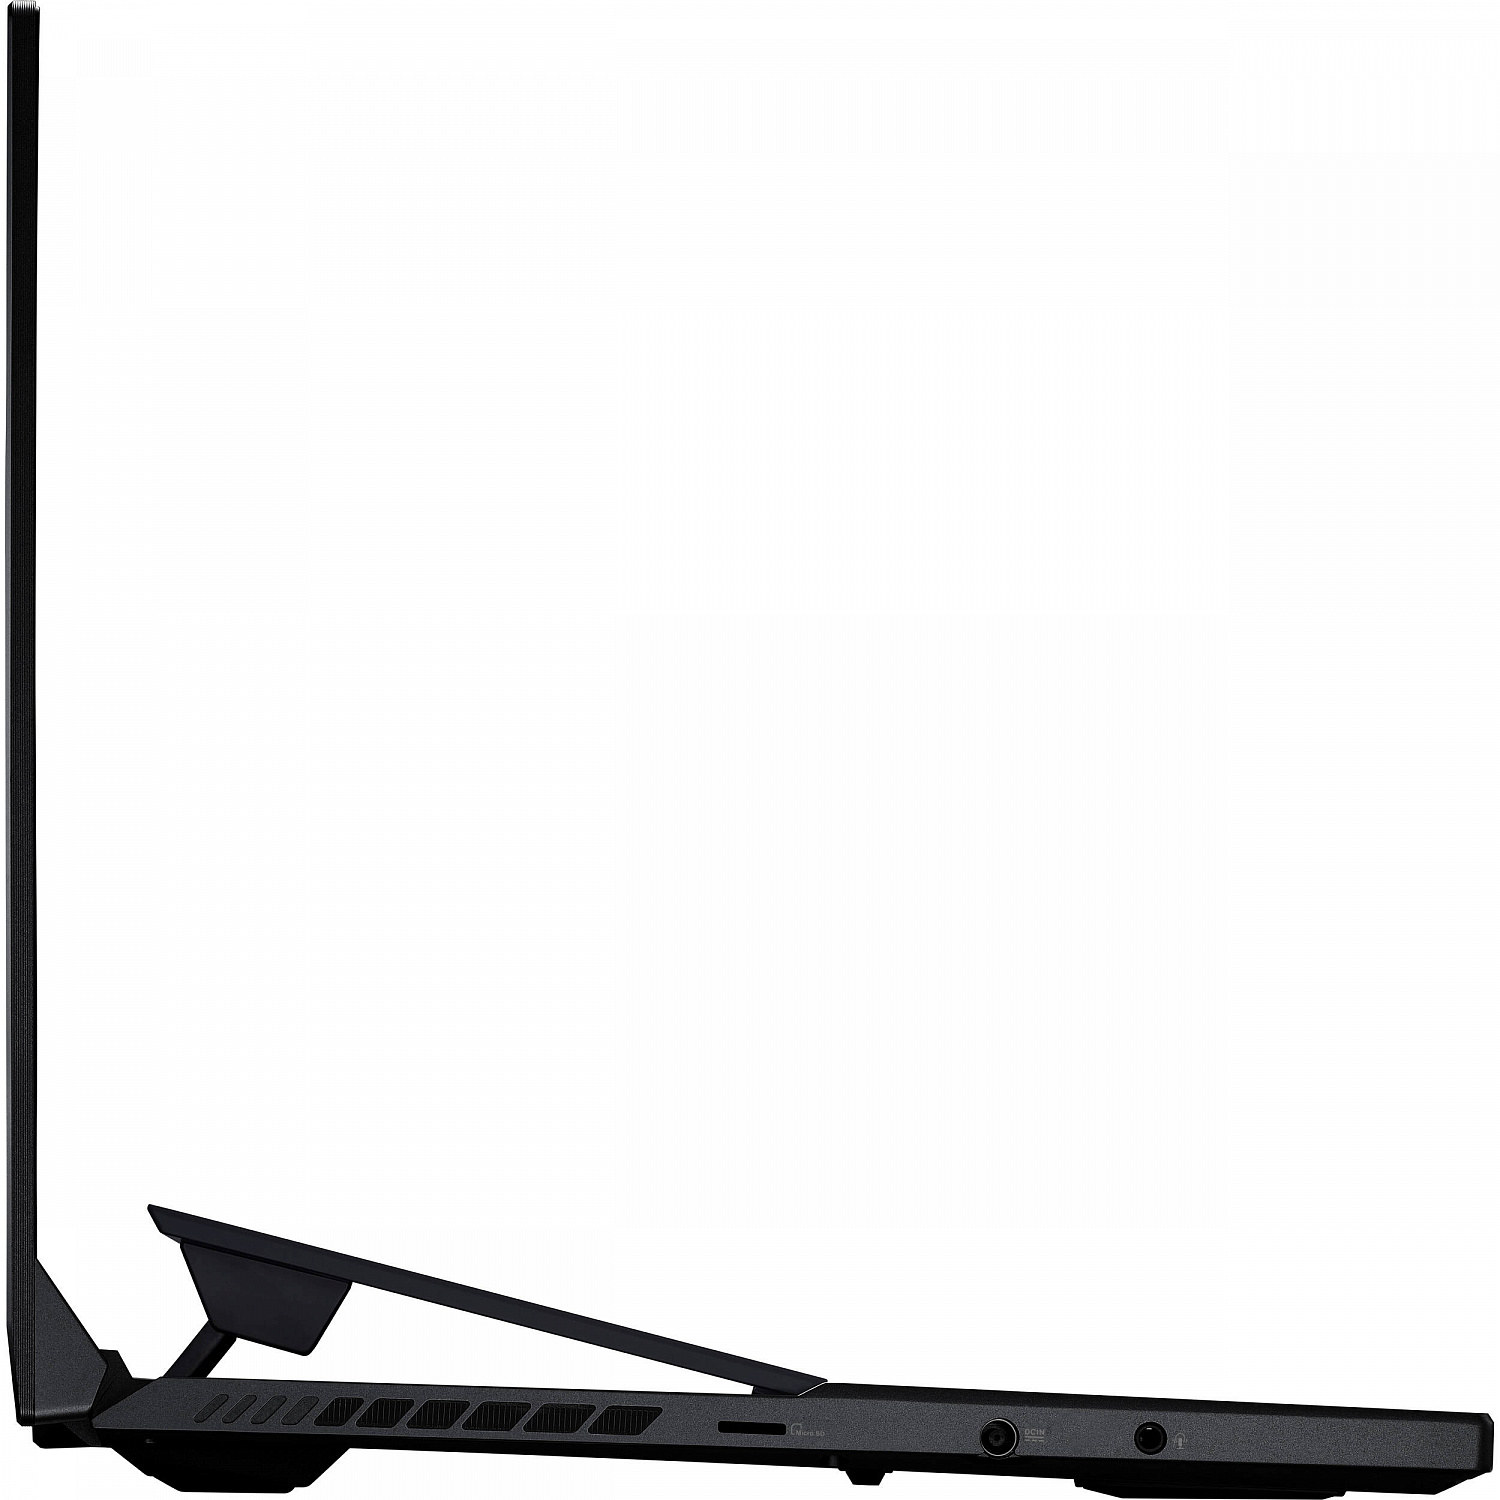 Купить Ноутбук ASUS ROG Zephyrus Duo 15 SE GX551QR Black (GX551QR-HF051T) - ITMag